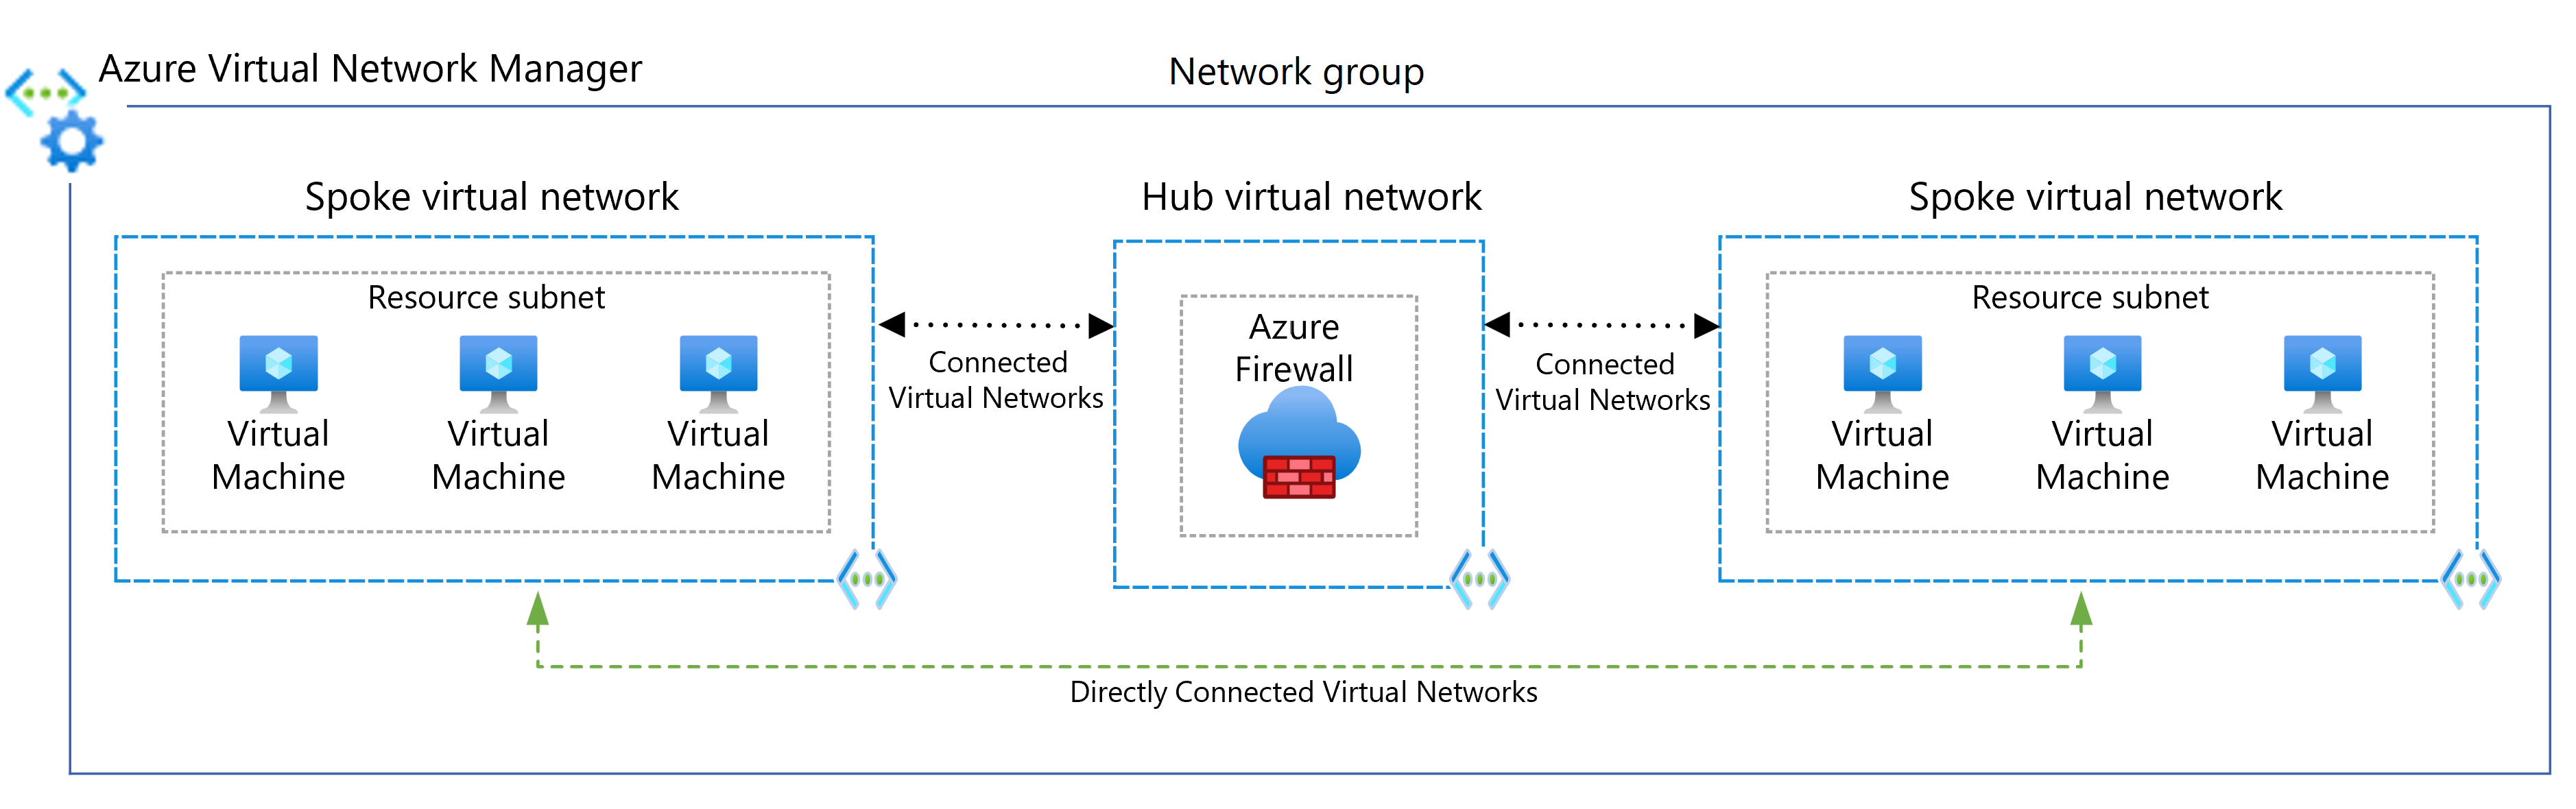 关系图显示使用 Virtual Network Manager 在分支之间建立的直接连接。